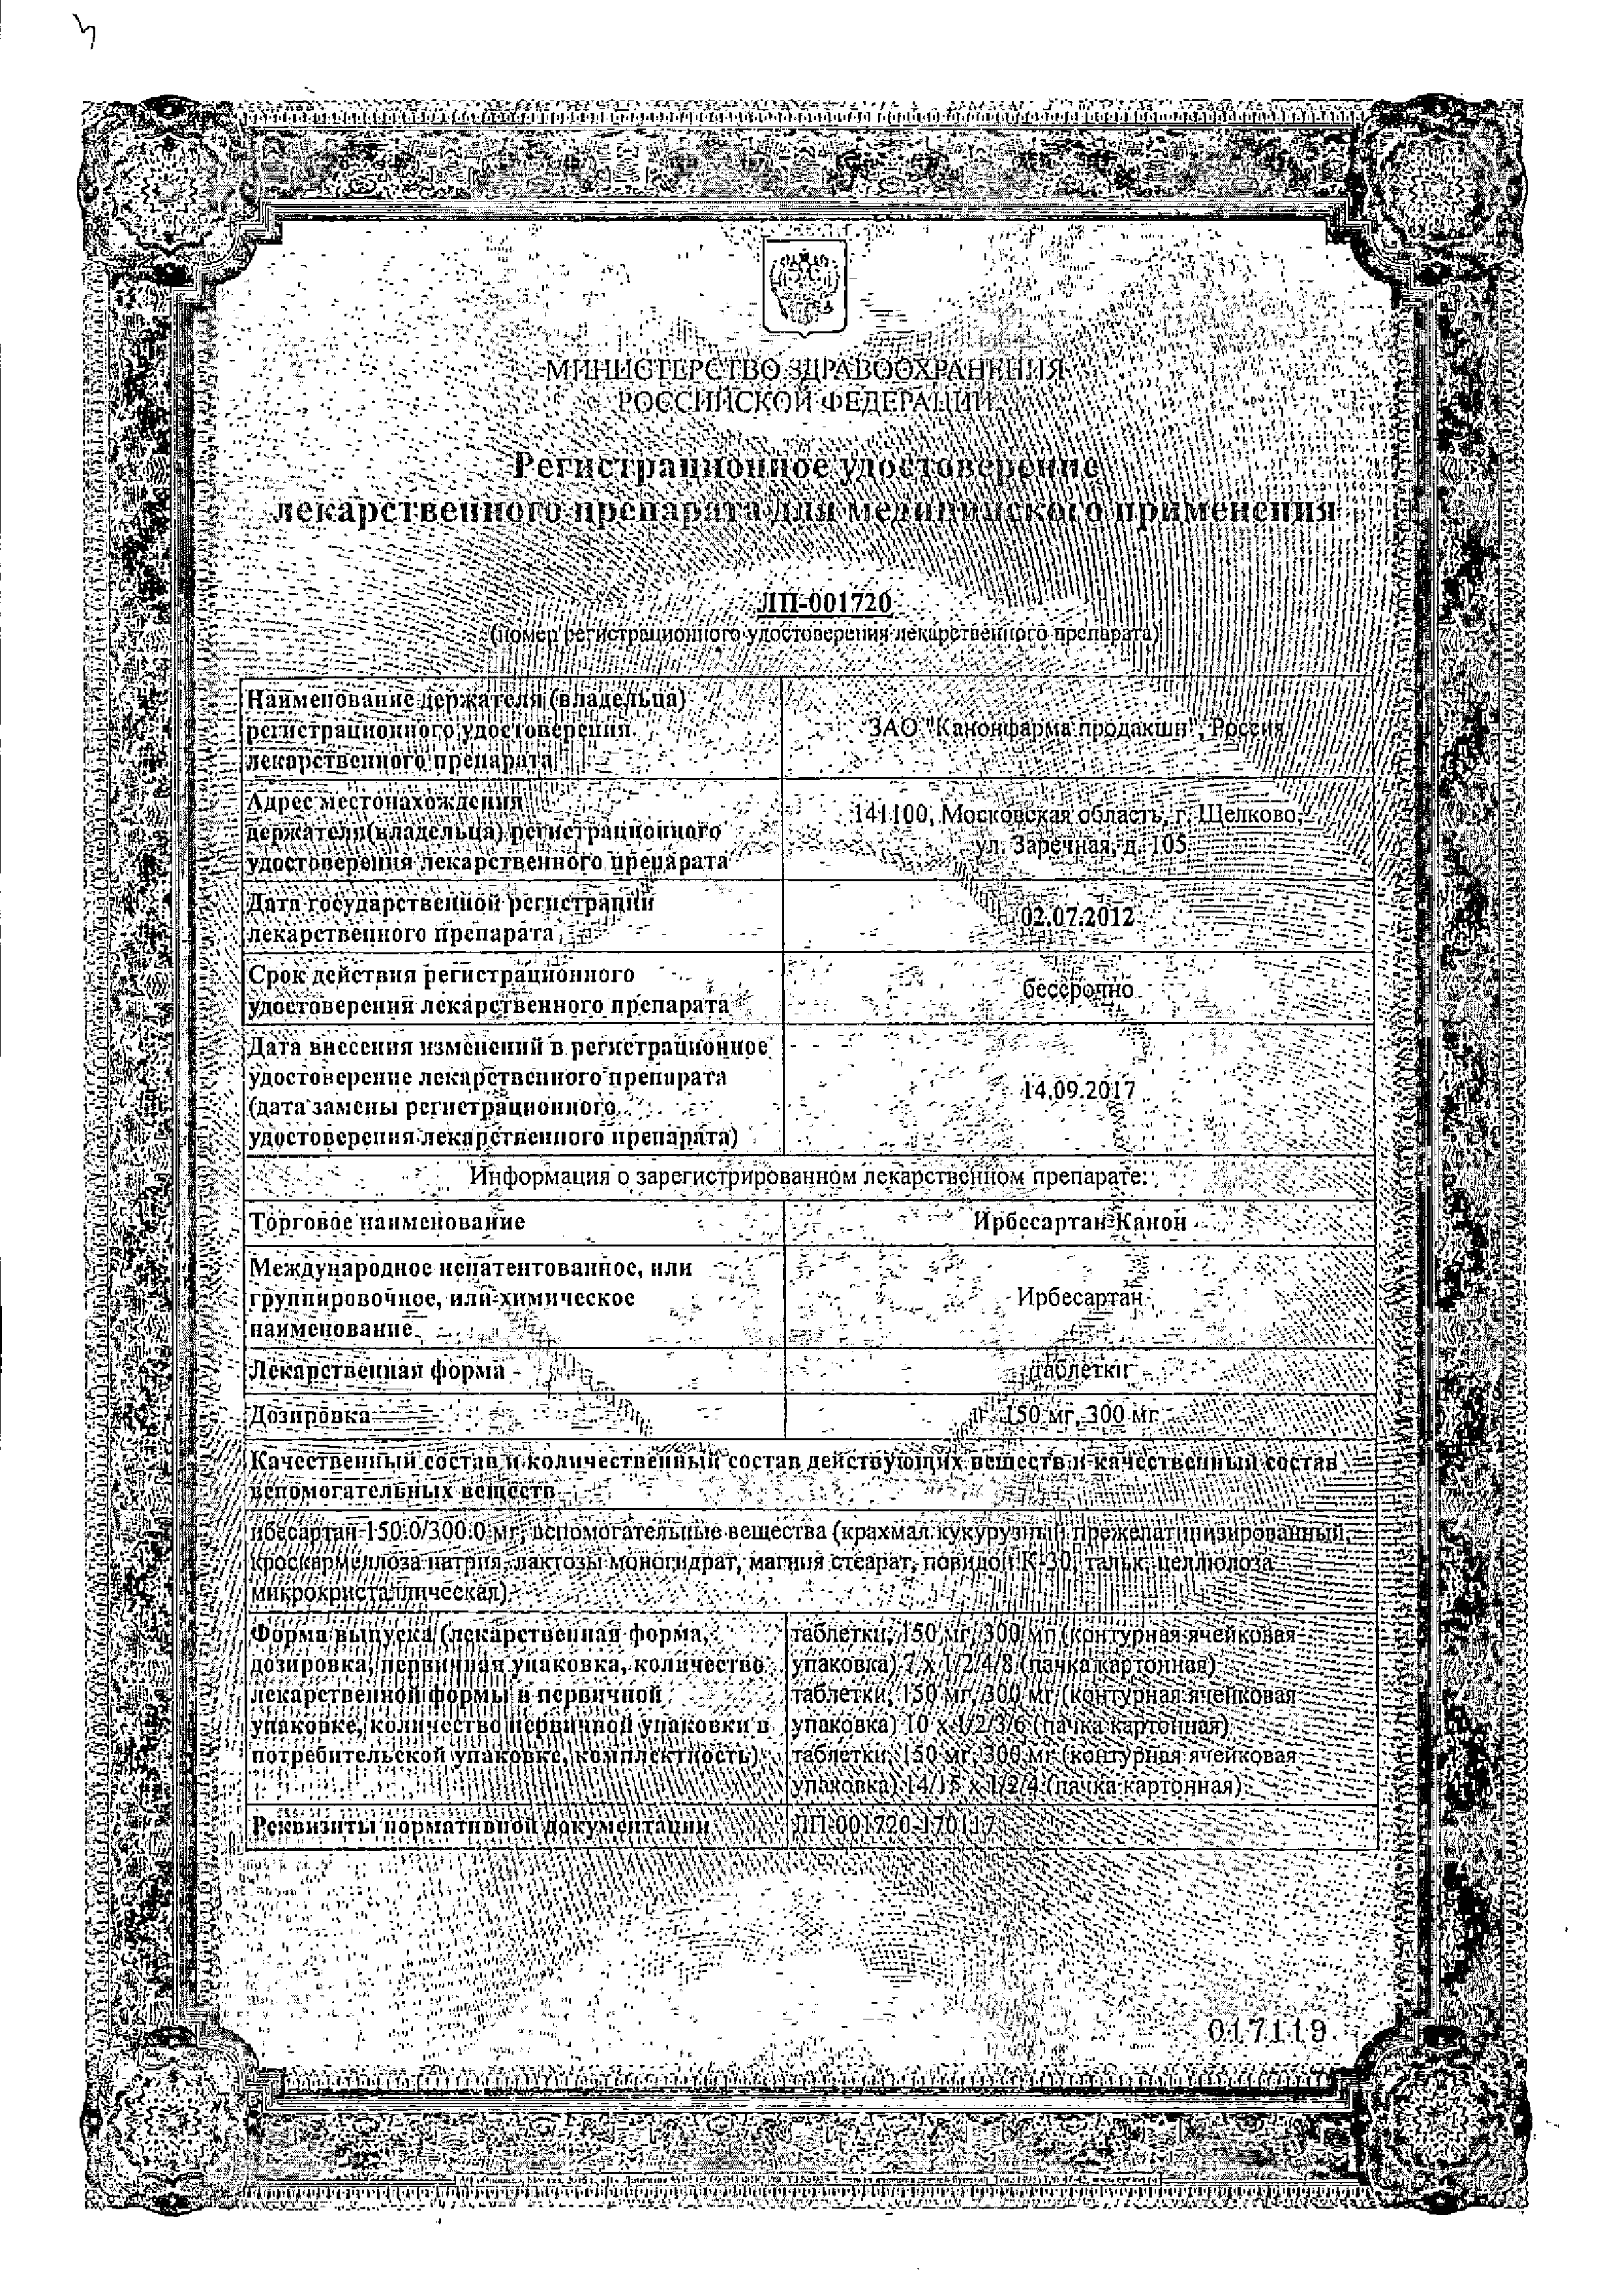 Ирбесартан Канон сертификат